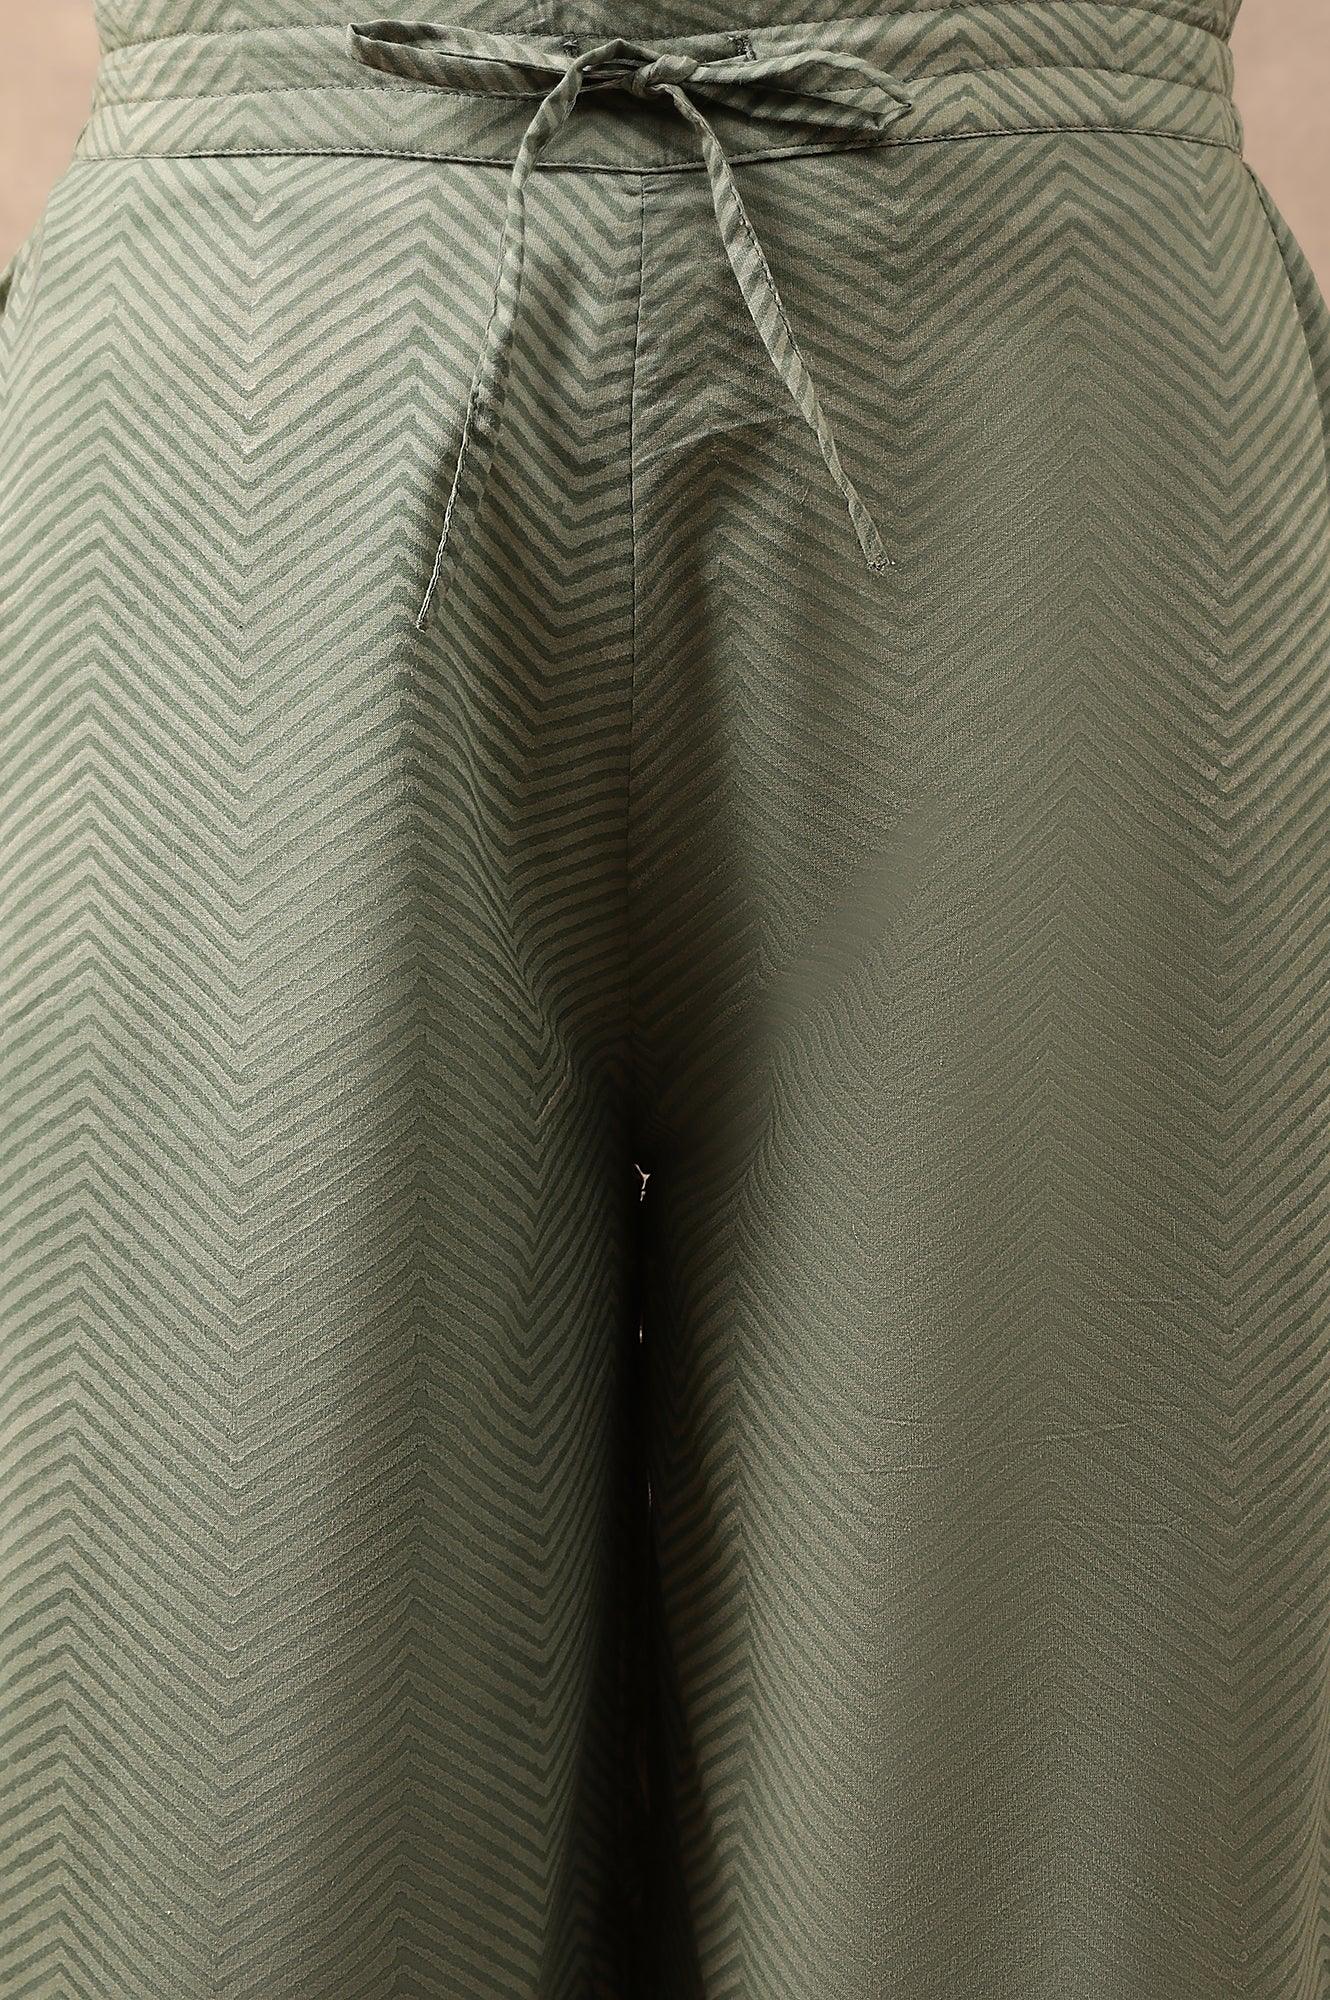 Olive Green Chevron Print Parallel Pants - wforwoman